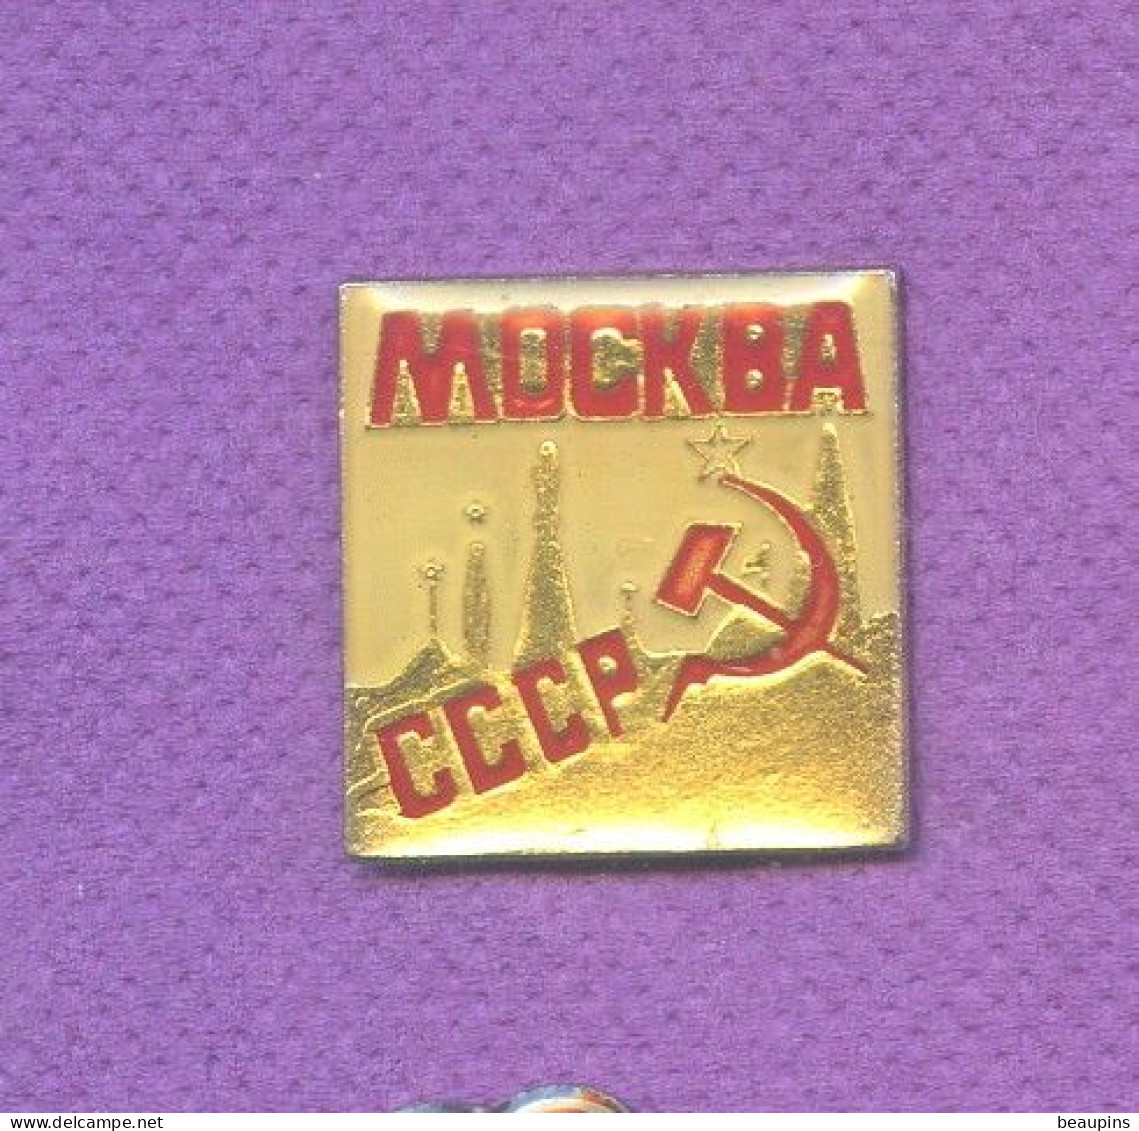 Rare Pins Russie Urss Cccp Faucille Marteau Politique N329 - Administración